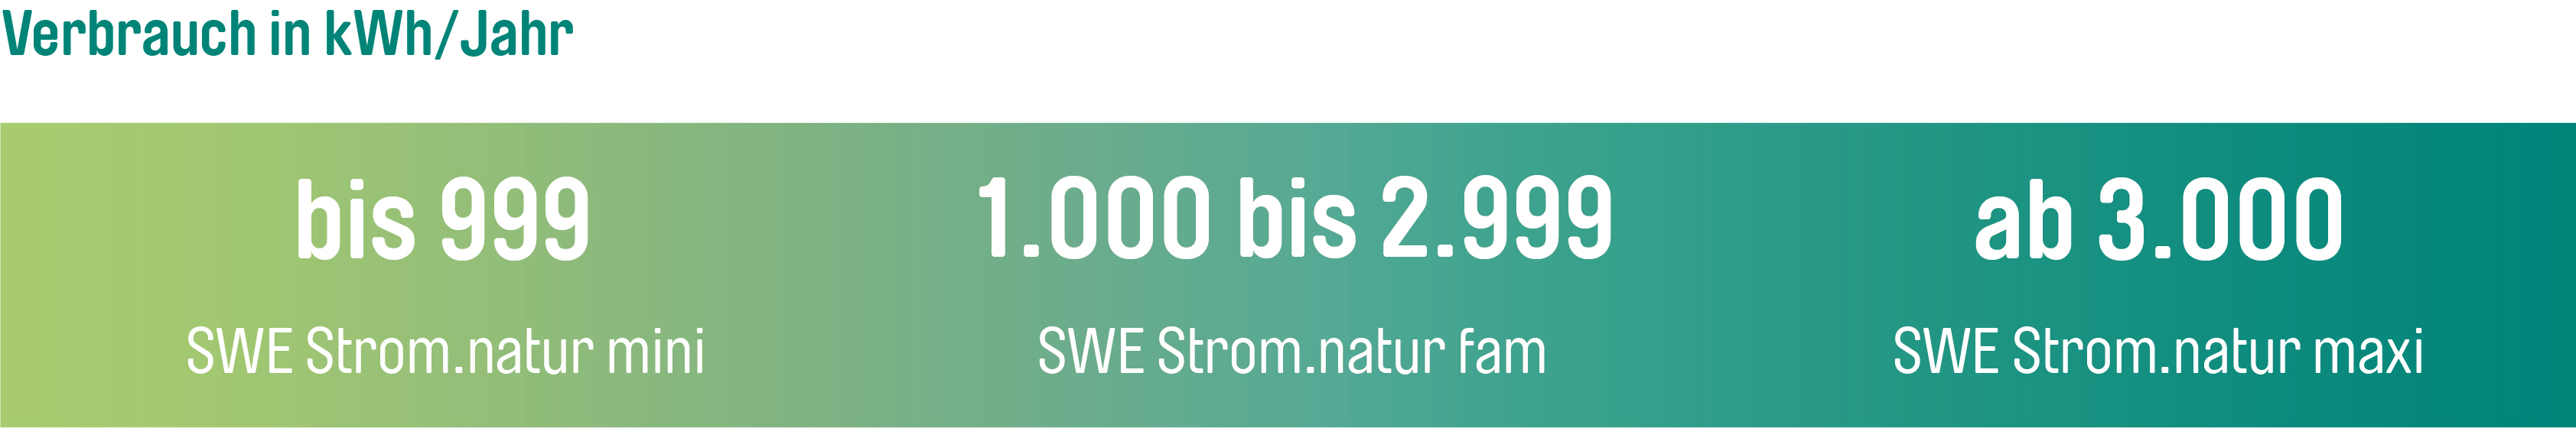 Bis 9.999 kWh erhält man den Tarif SWE Strom.natur mini, von 10.000 bis 29.999 kWh fam und ab 30.000 kWh den Tarif SWE.Strom maxi.